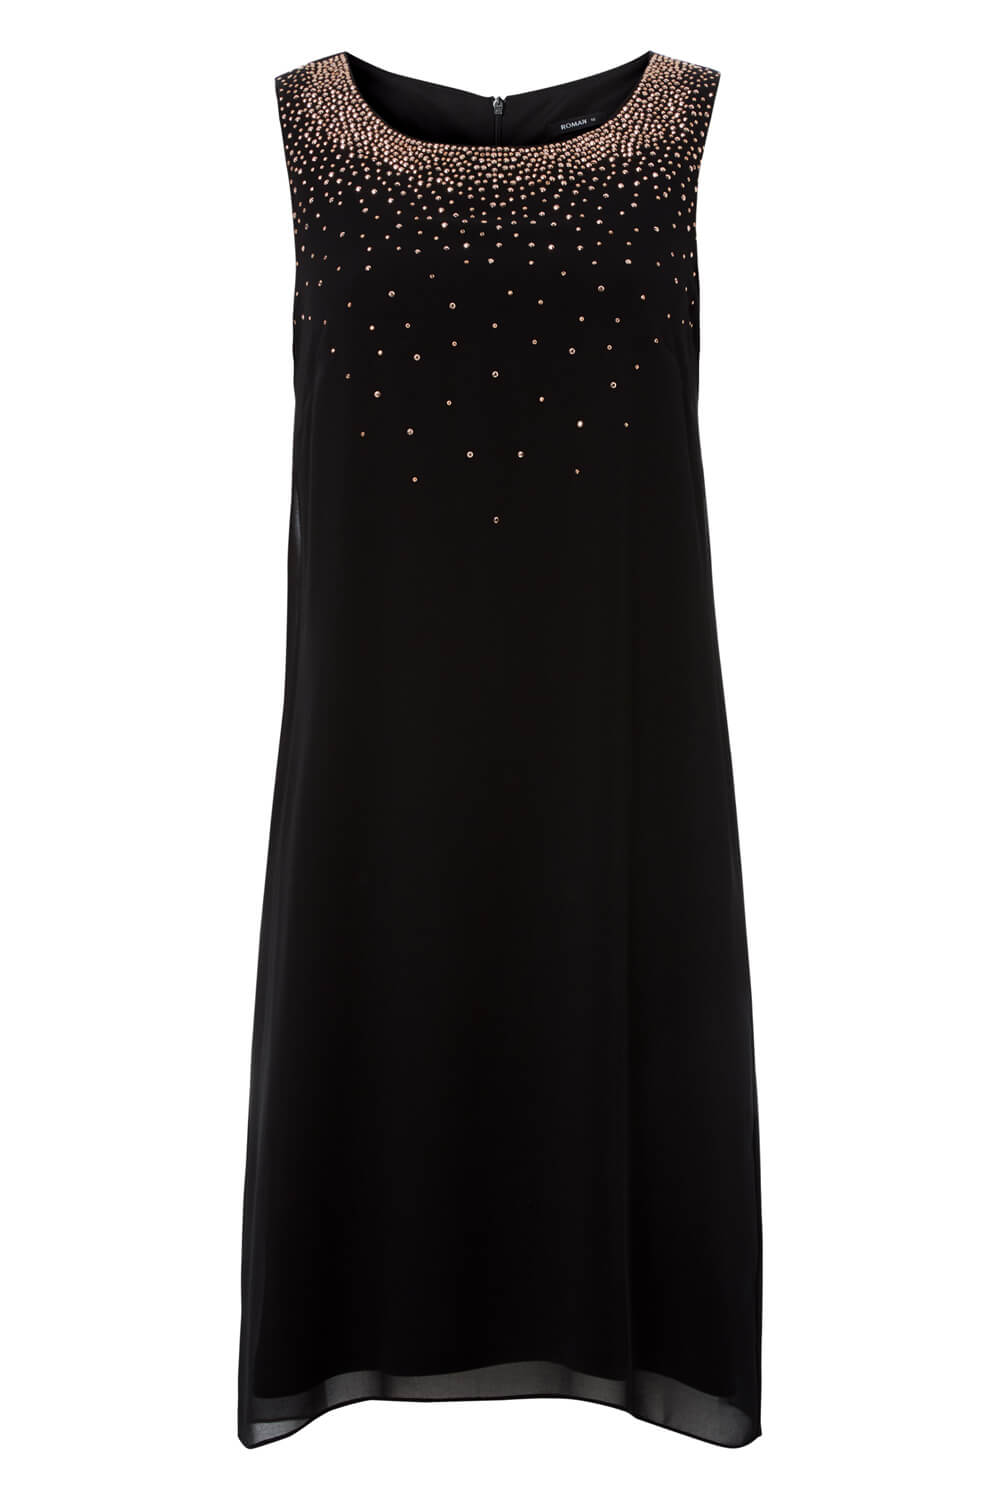 Black Embellished Swing Dress, Image 6 of 6